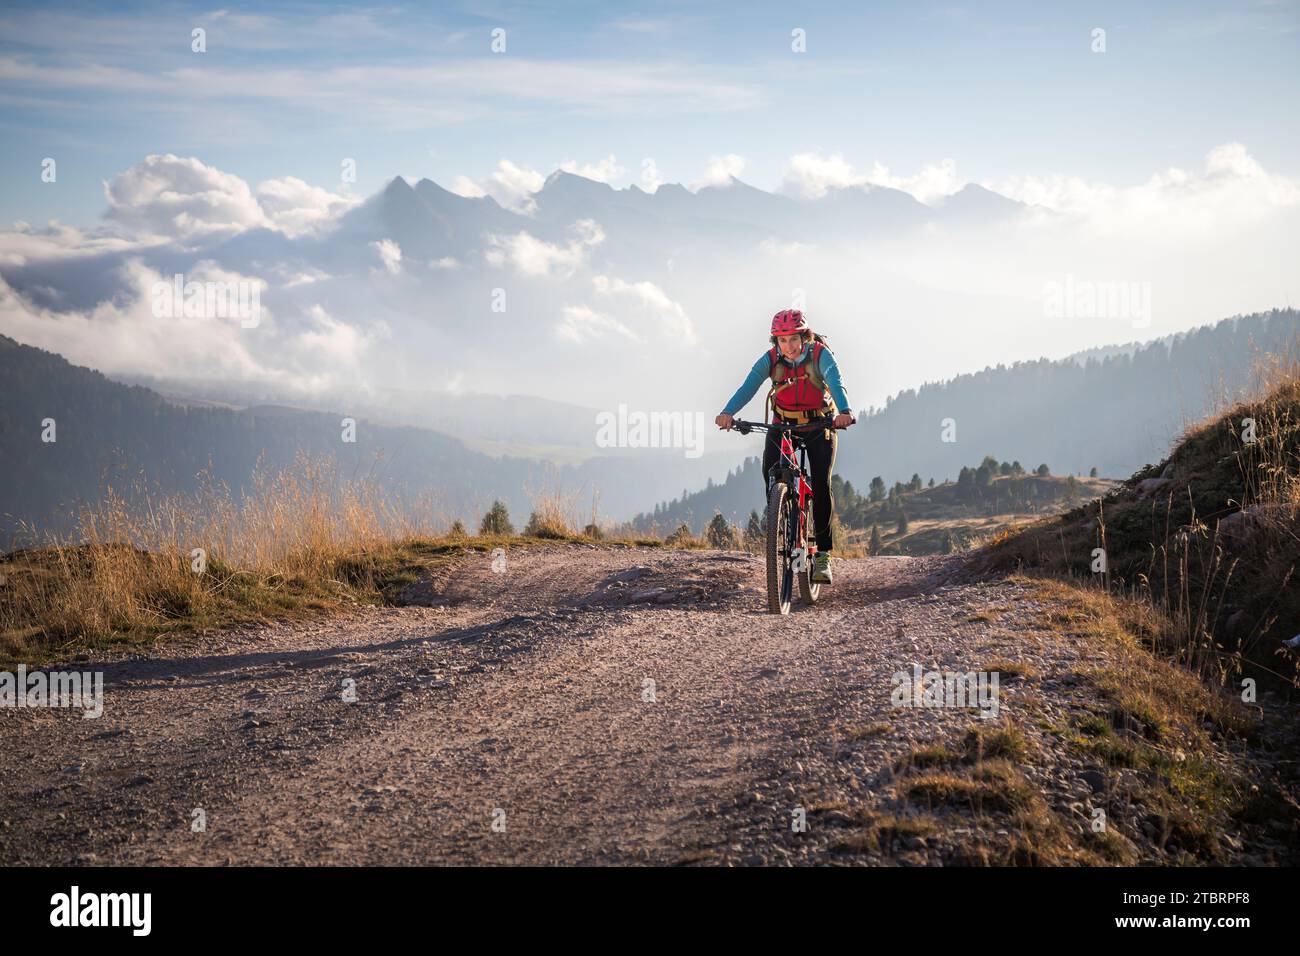 Italie, Vénétie, province de Belluno, activité de plein air, femme le long d'un chemin de terre à cheval sur un e-bike Banque D'Images